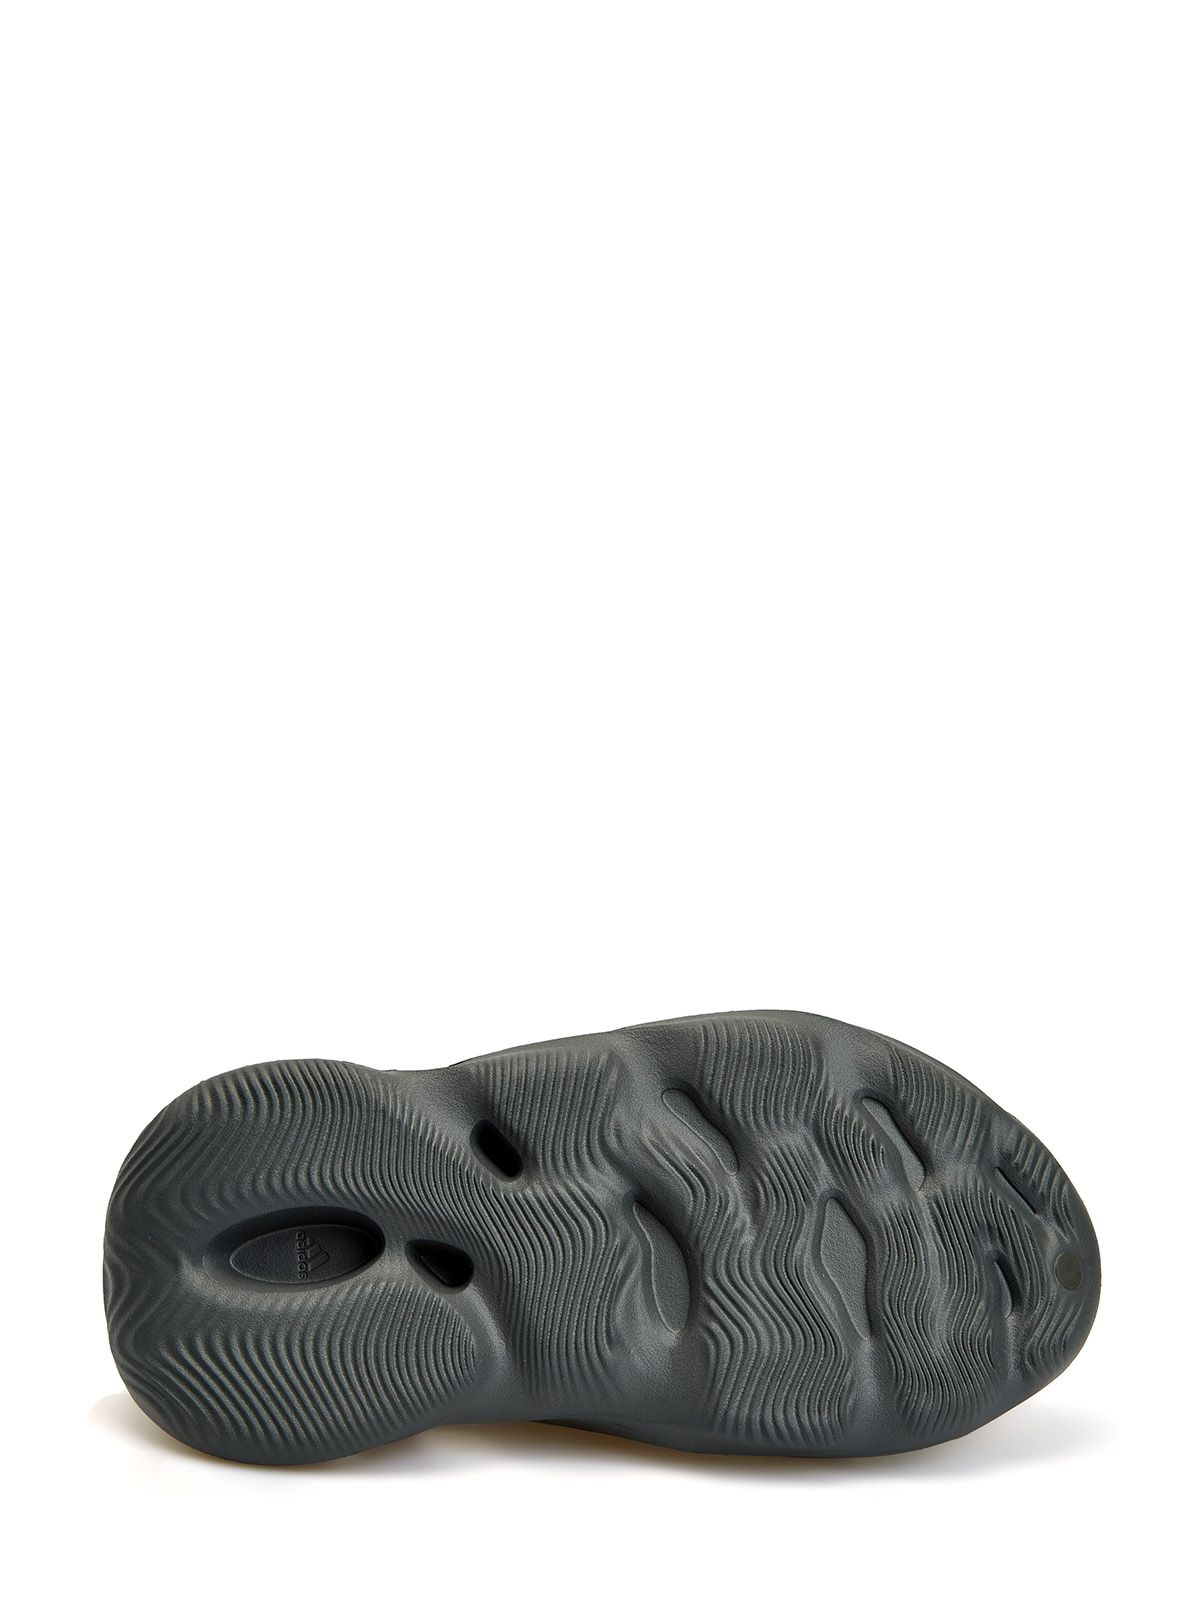 Кроссовки Yeezy Foam Runner 'Carbon' Yeezy, цвет черный, размер 40.5 - фото 5